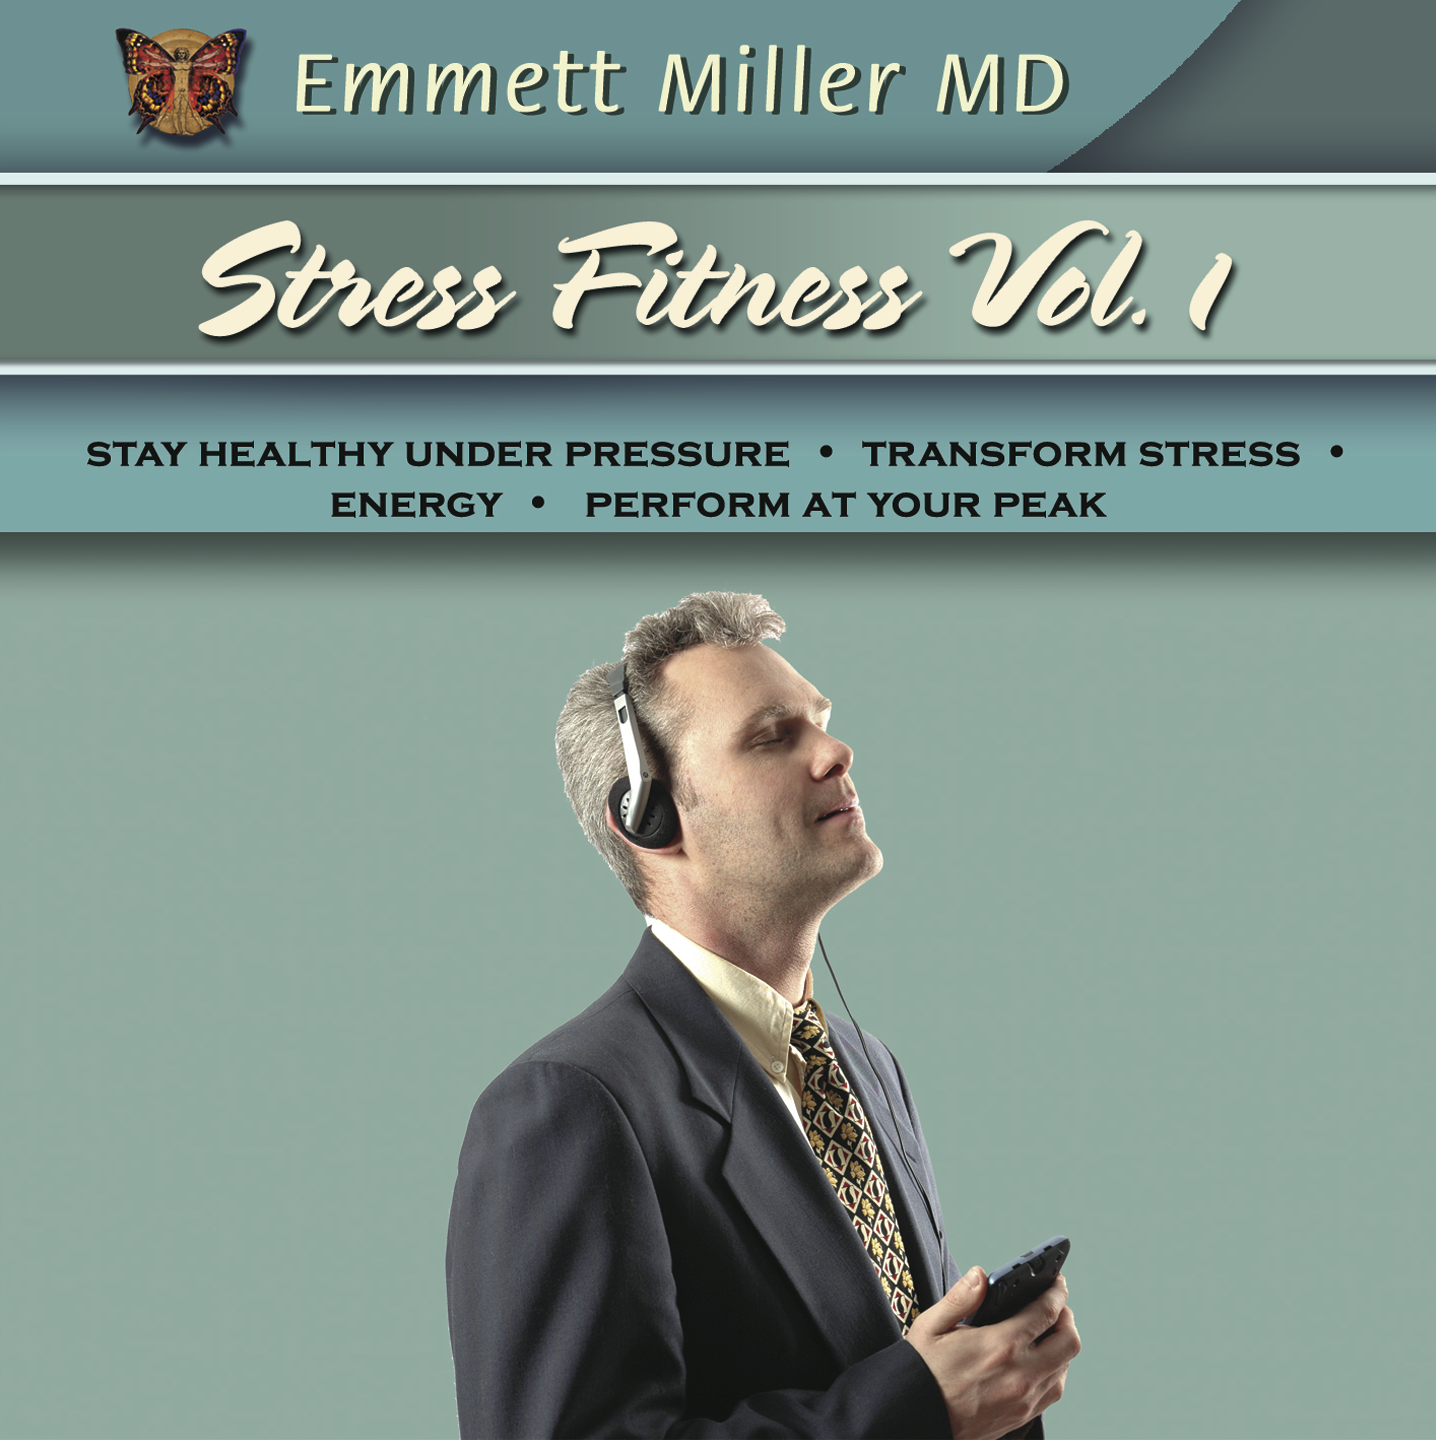 Stress Fitness Vol1 with Dr. Emmett Miller Audio Program Dr. Emmett Miller - BetterListen!